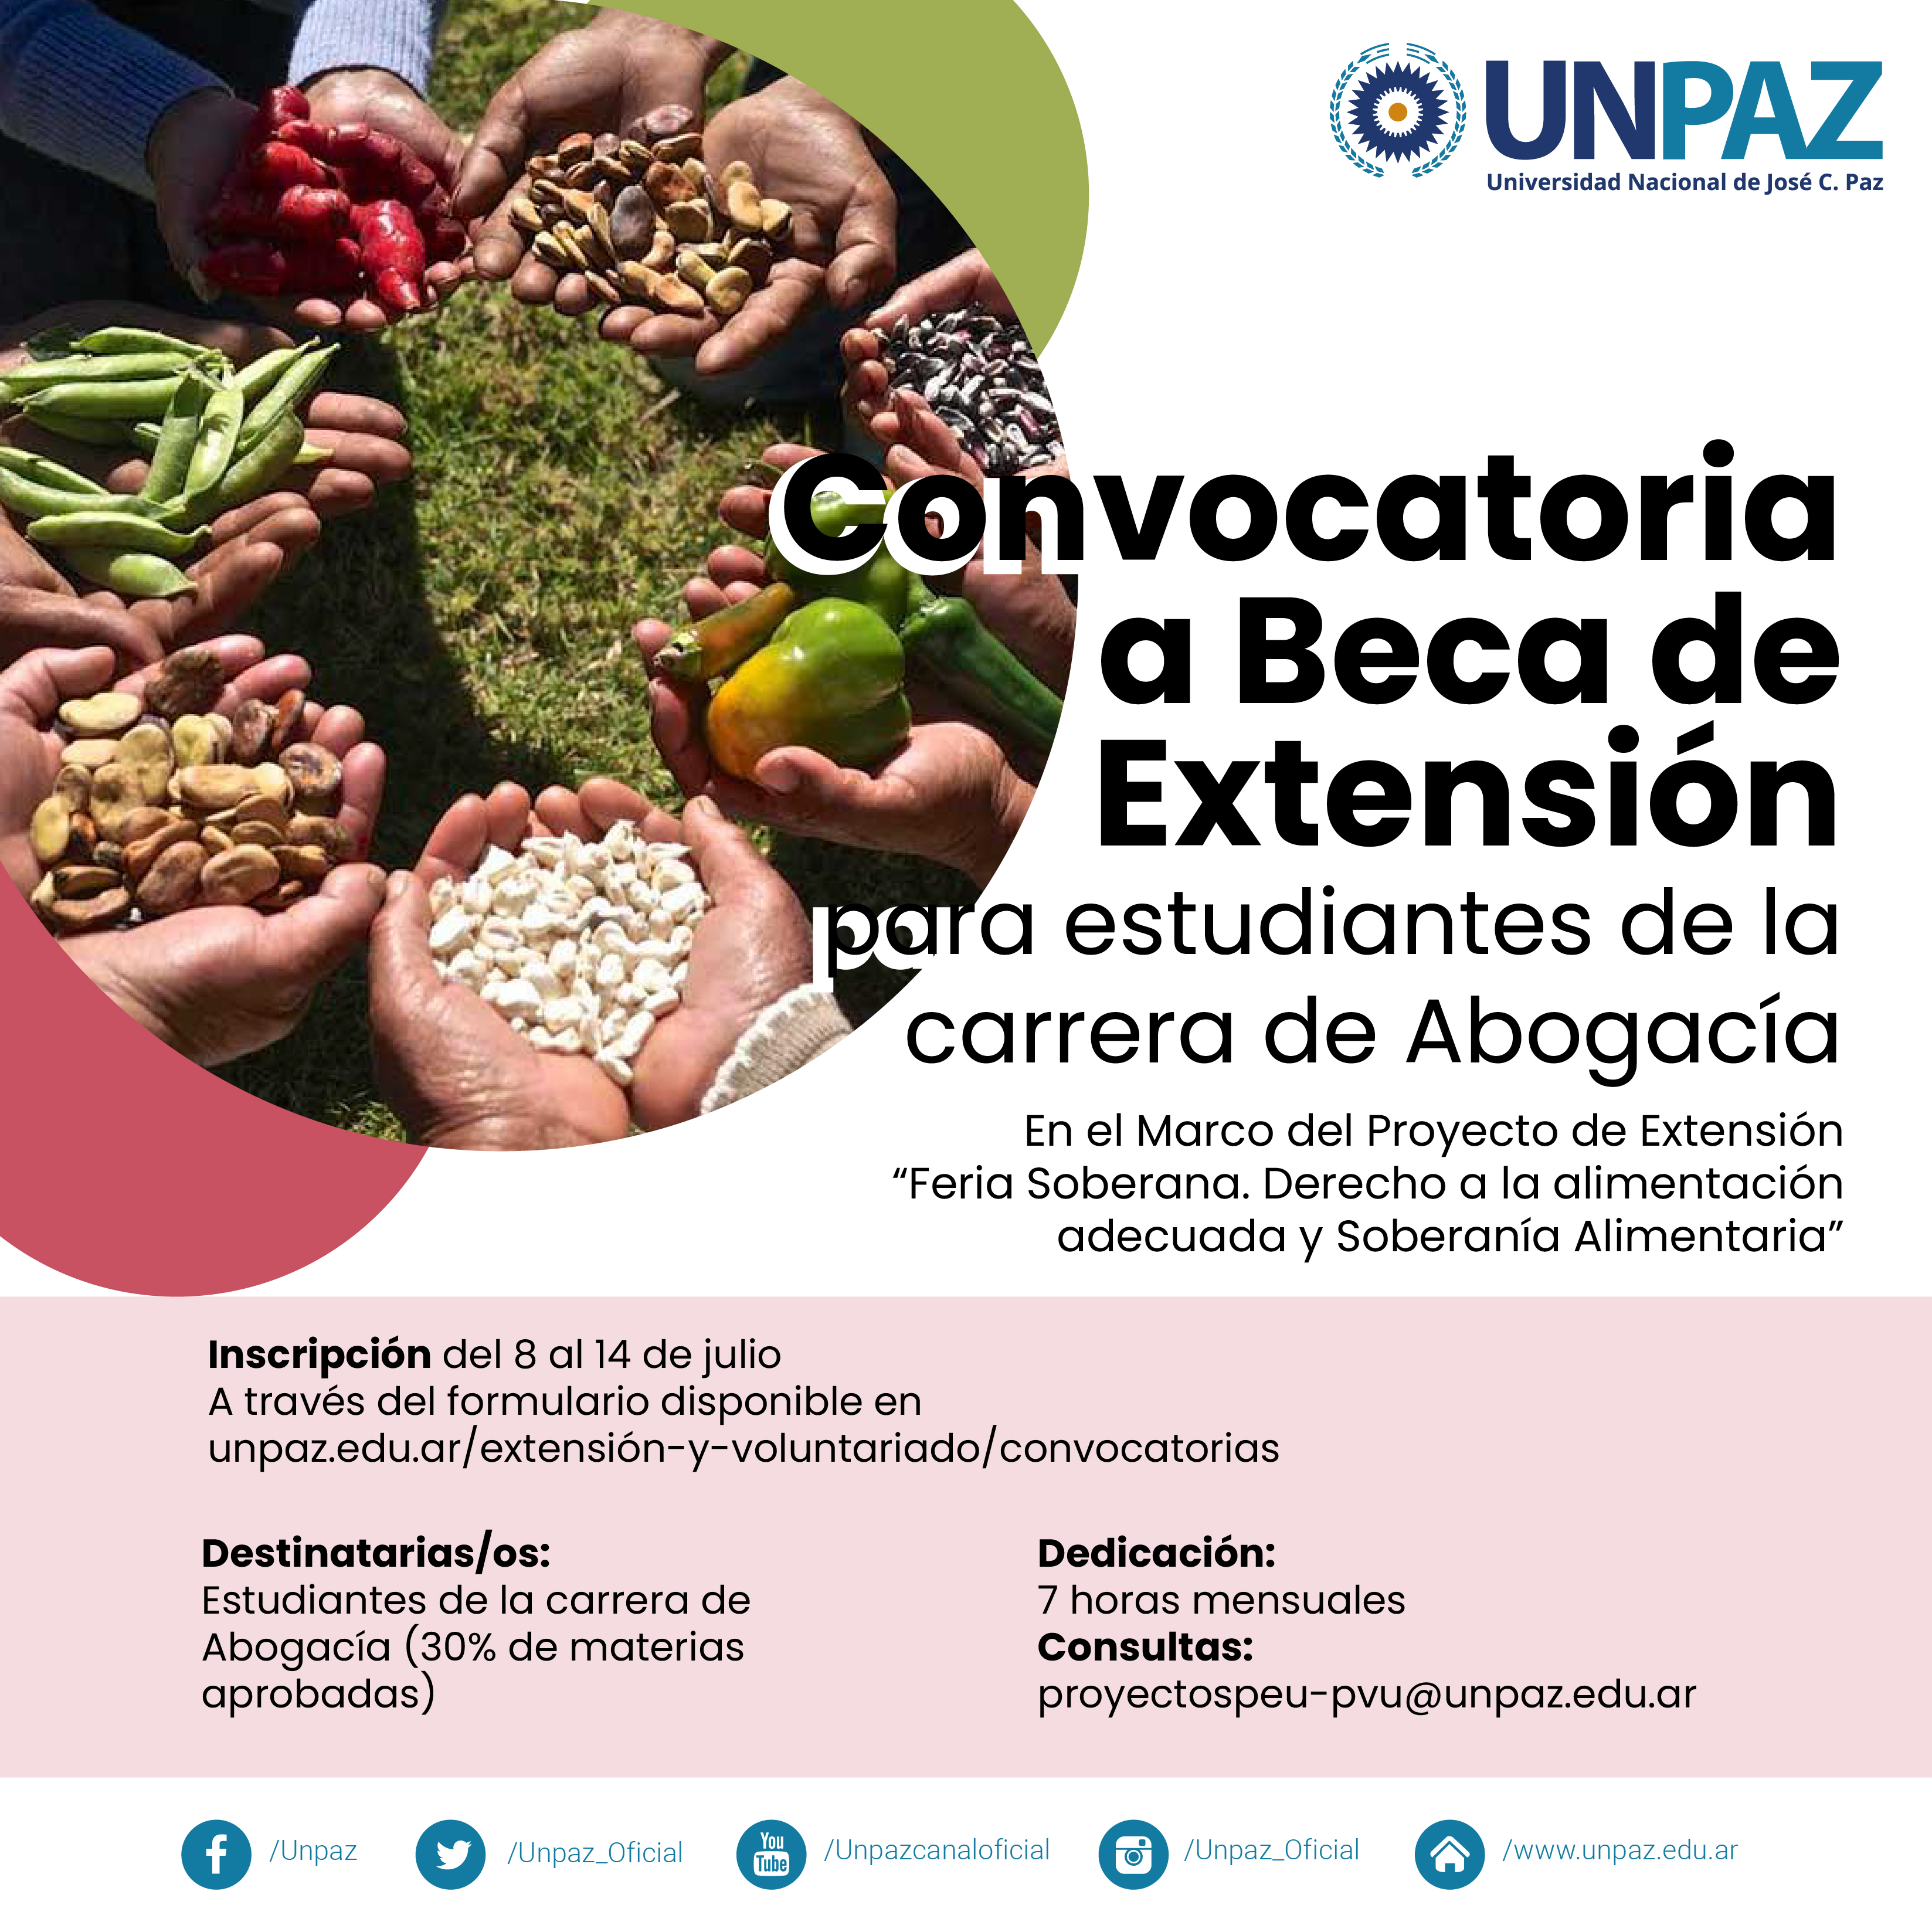 Proyecto “Feria Soberana. Derecho a la alimentación adecuada y Soberanía Alimentaria”.